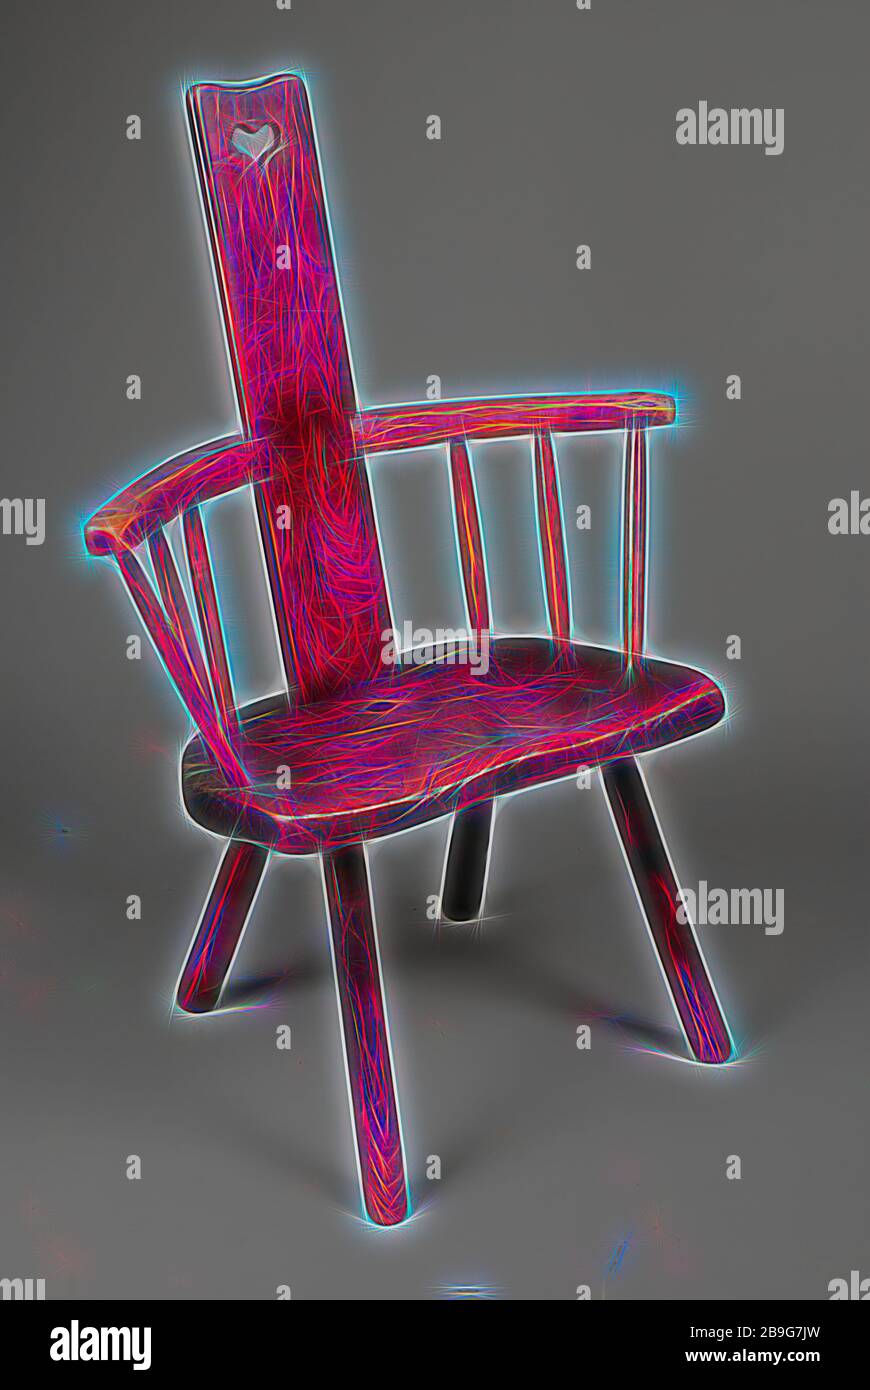 Eiche Stuhl, Sessel Möbel Inneneinrichtung Design Eiche Holz ohne Ulmenholz  100,0, Oak Stuhl mit gerader plankförmiger Rückenlehne mit herzförmigem Loch  halbrund Sitz und gebogener Armlehne auf beiden Seiten der Rückenlehne drei  Stangen